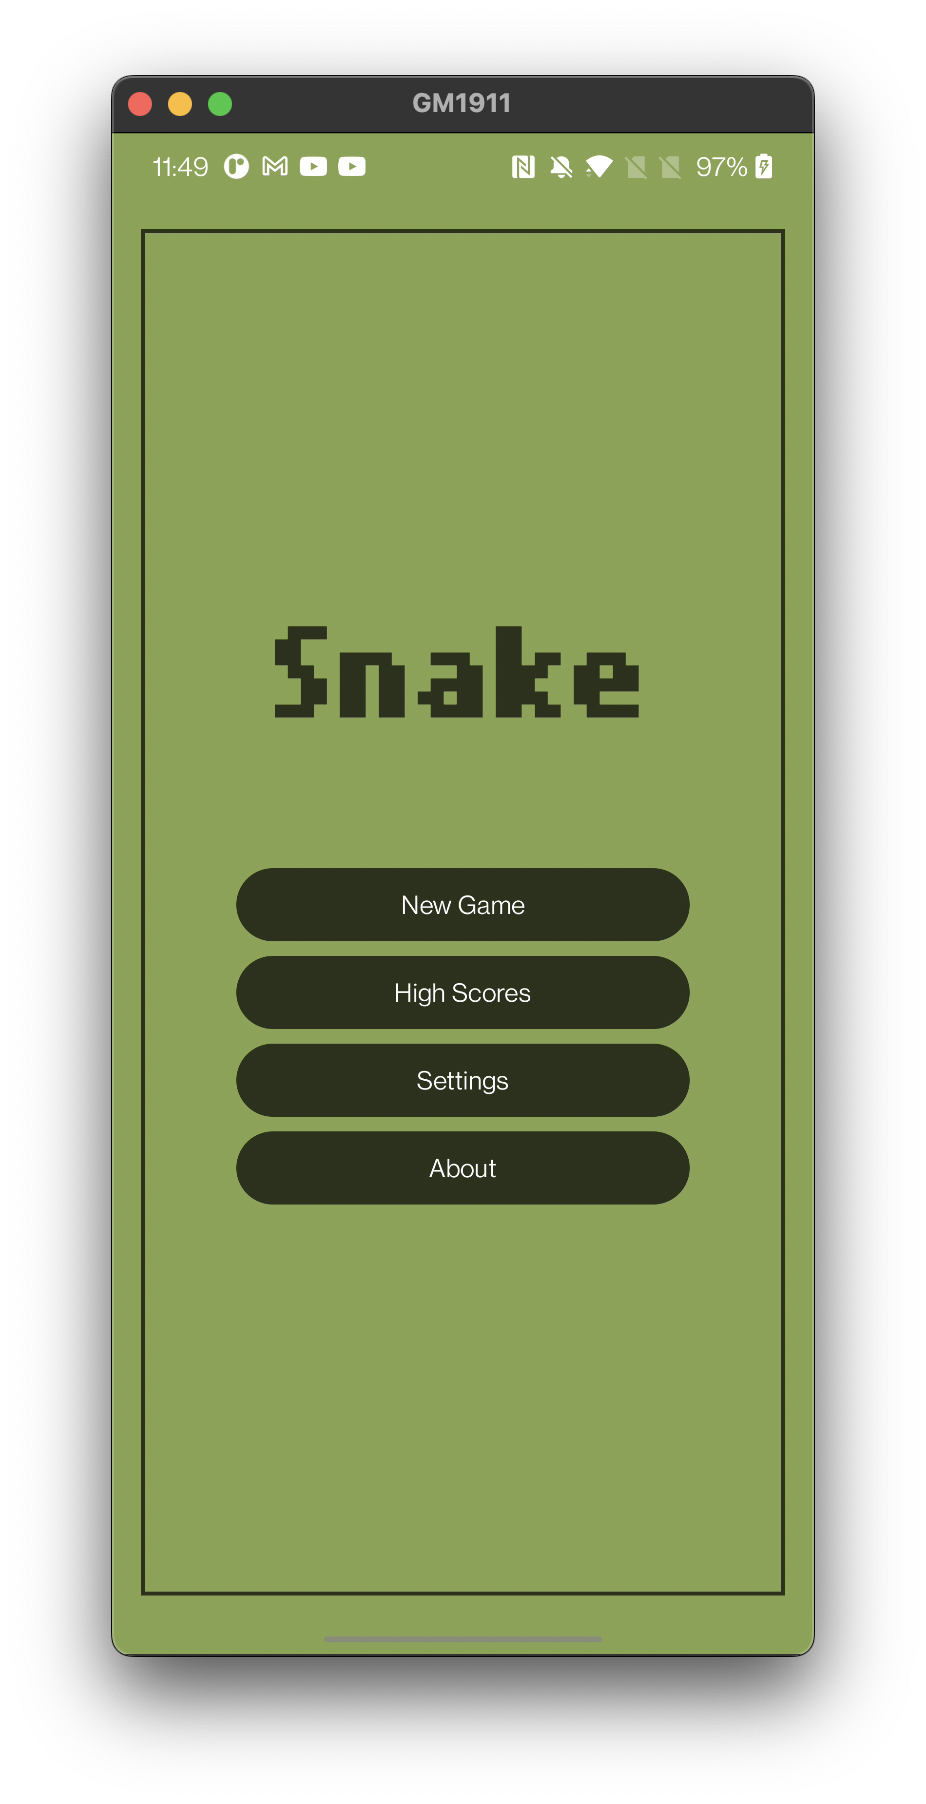 snake-game · GitHub Topics · GitHub